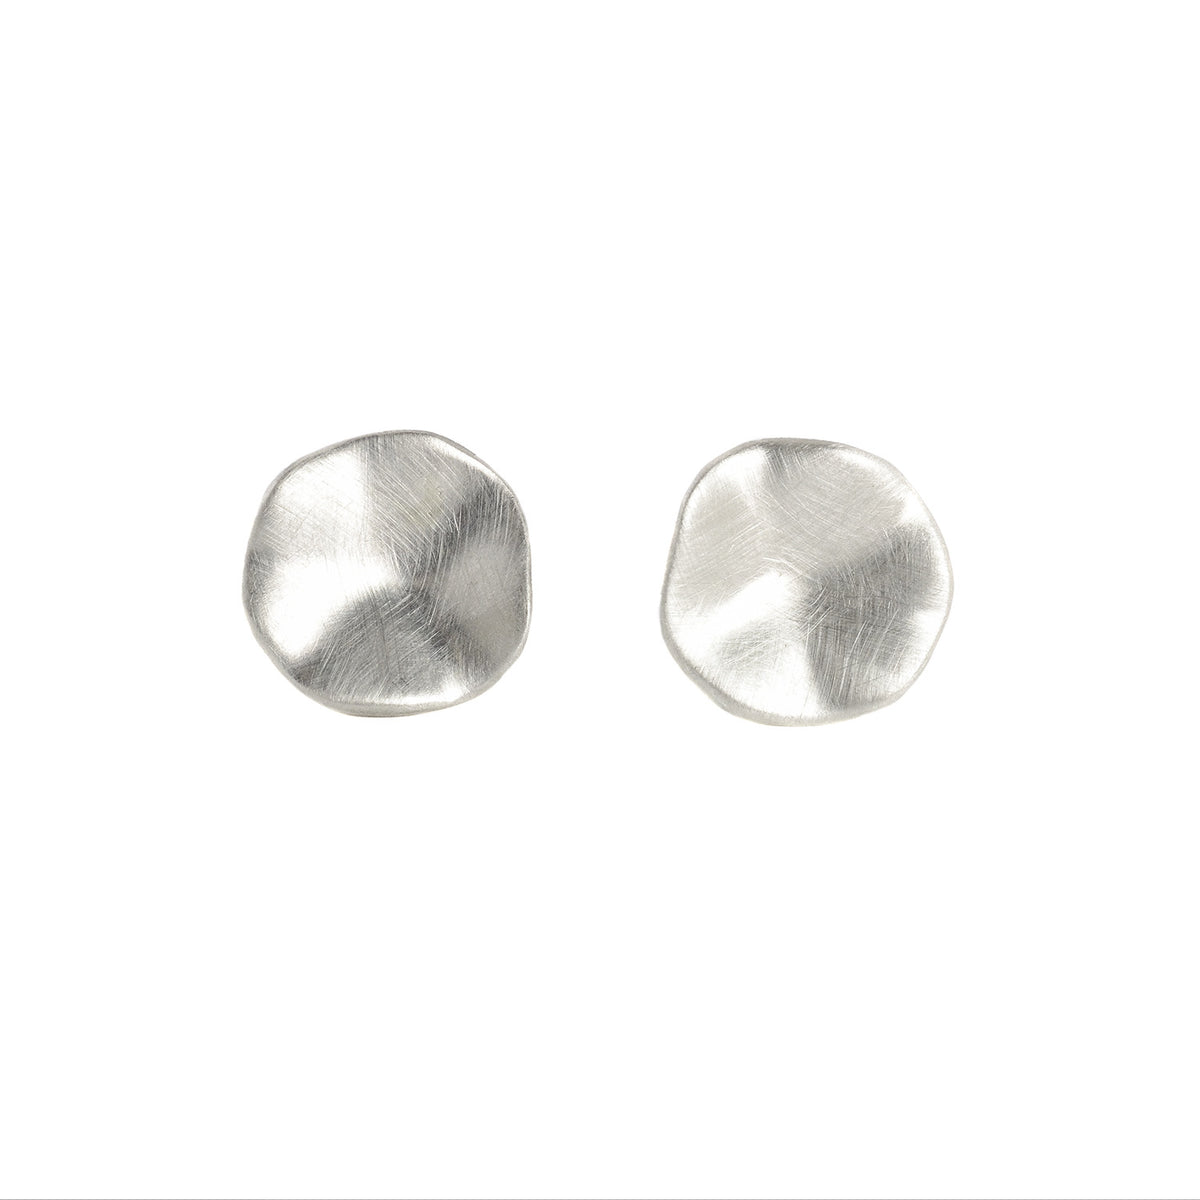 Seed Stud Earrings in Sterling Silver by Branch– Fire Opal Company